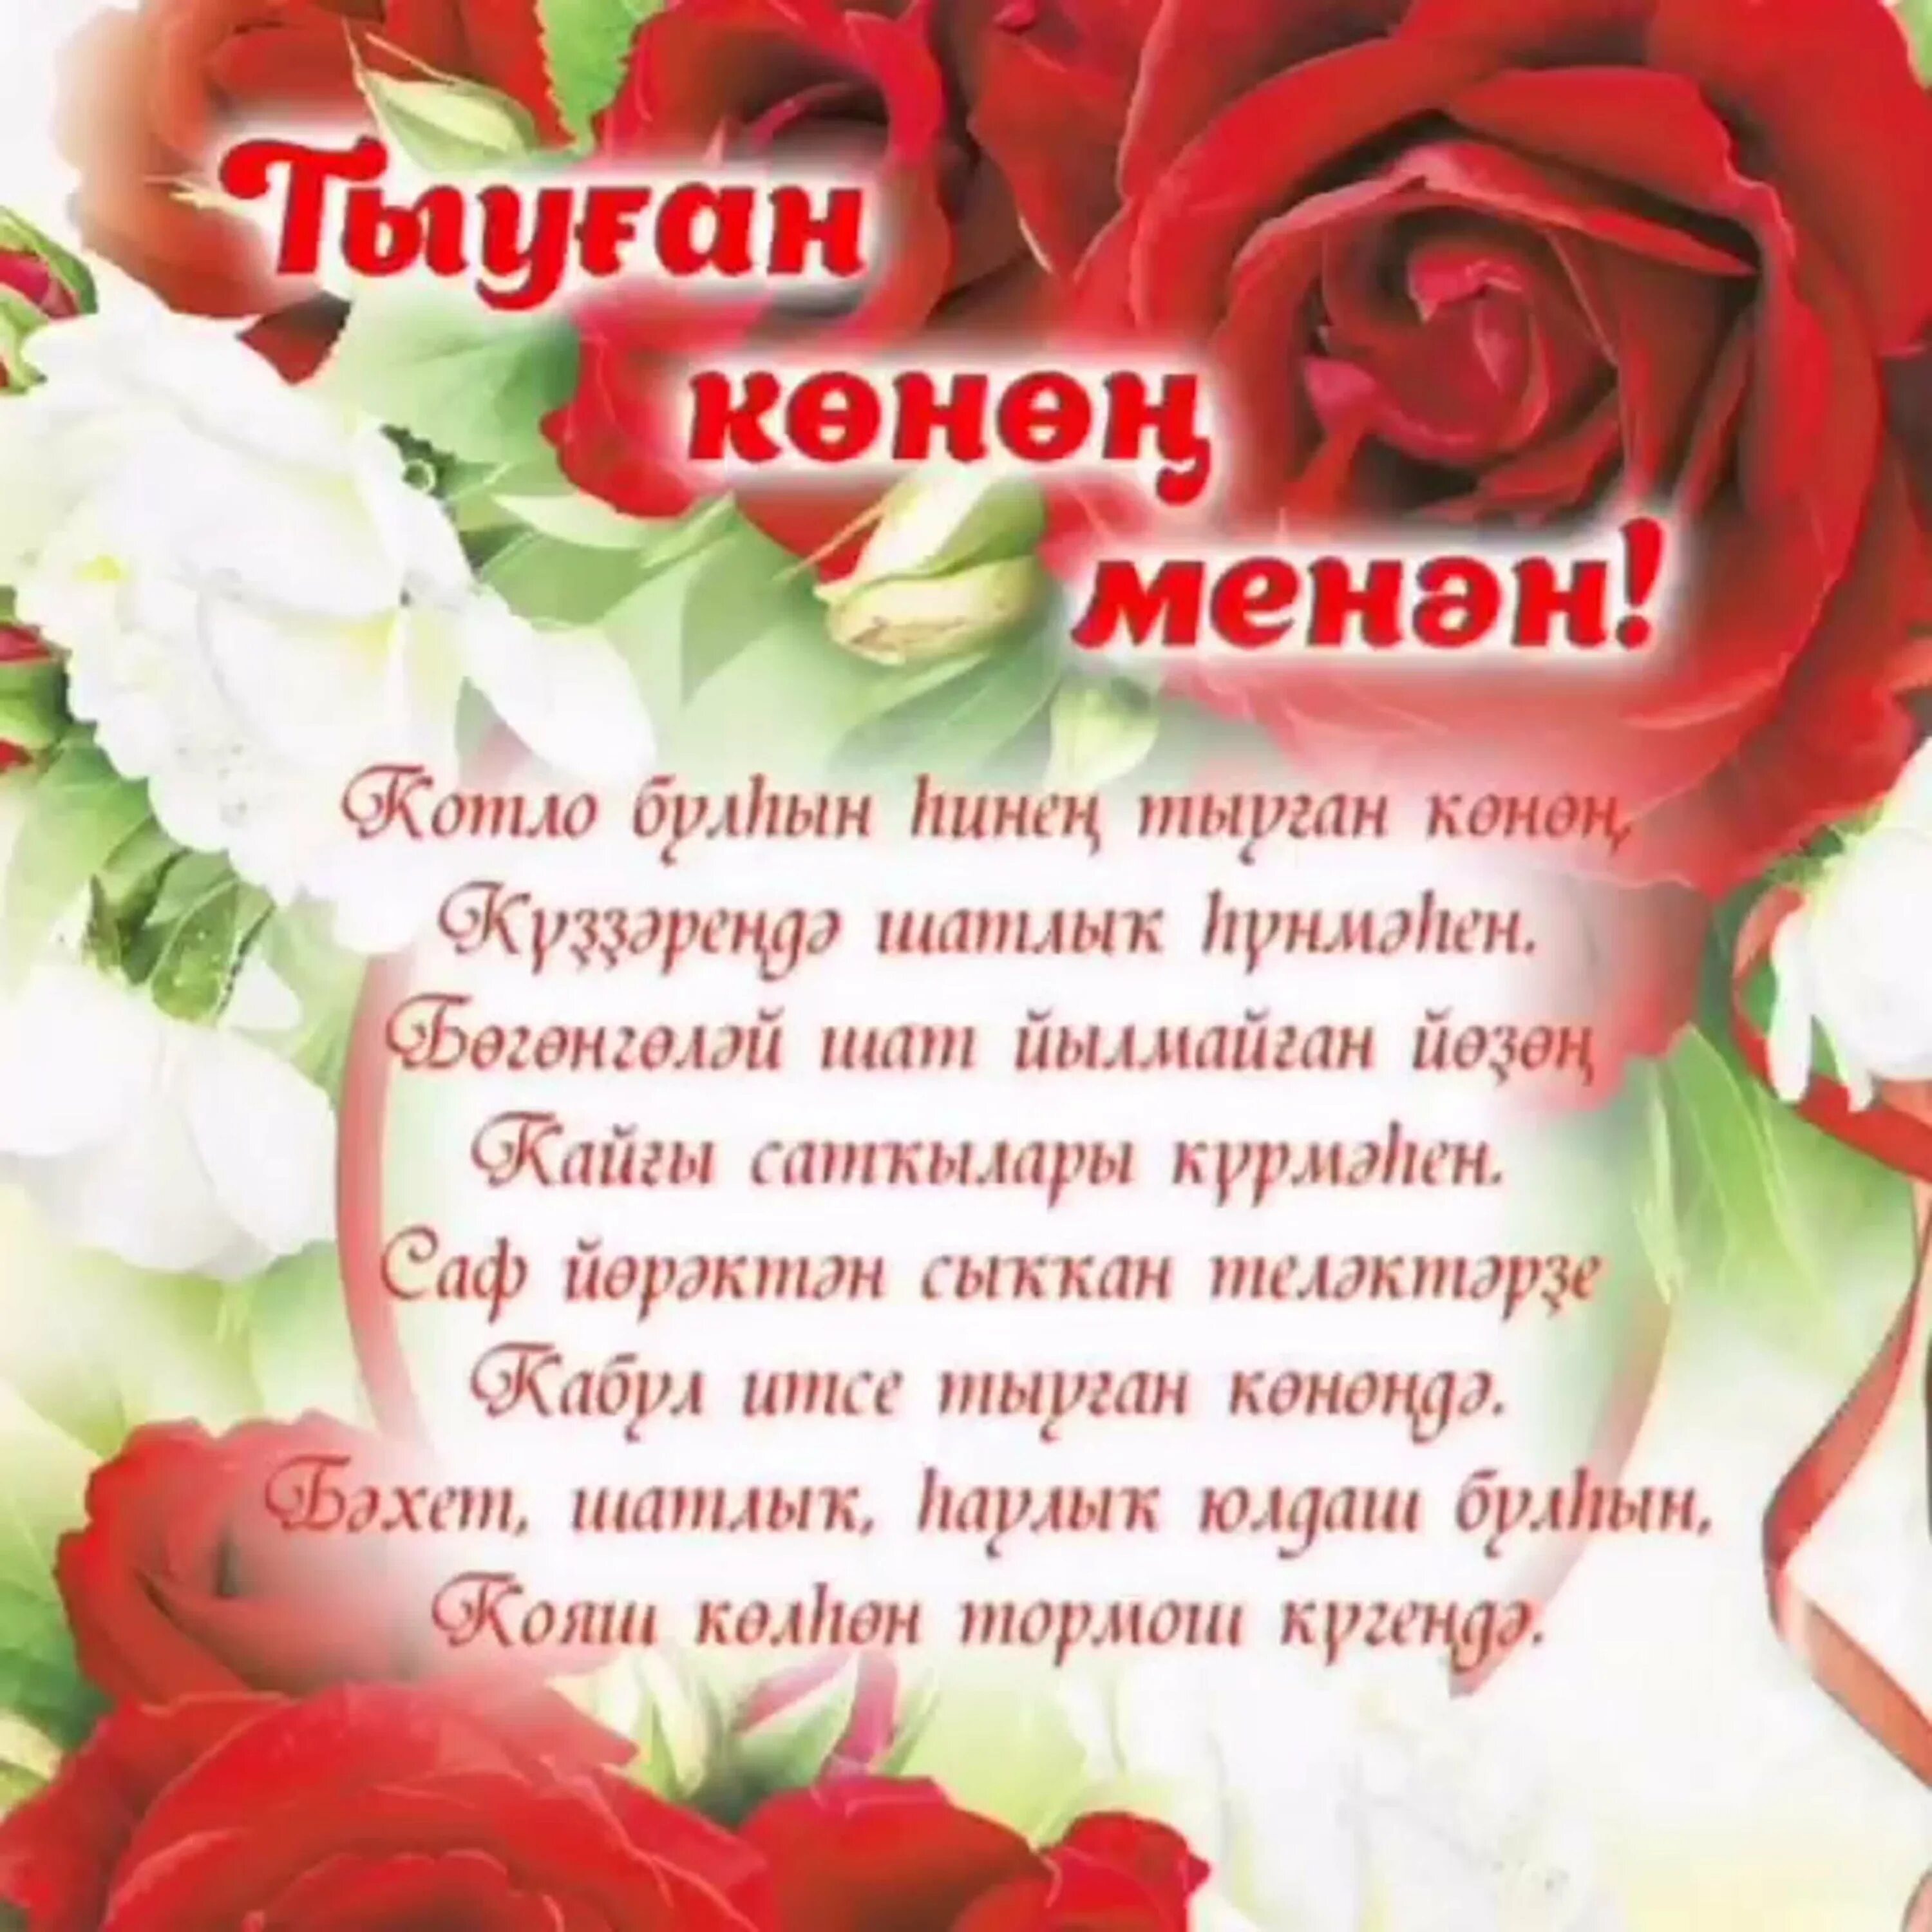 Поздравления на башкирском языке. Поздравления с днём рождения на башкирском языке. Поздравление на татарском языке. Поздравления с днём рождения женщине на башкирском языке. Туган конен текст